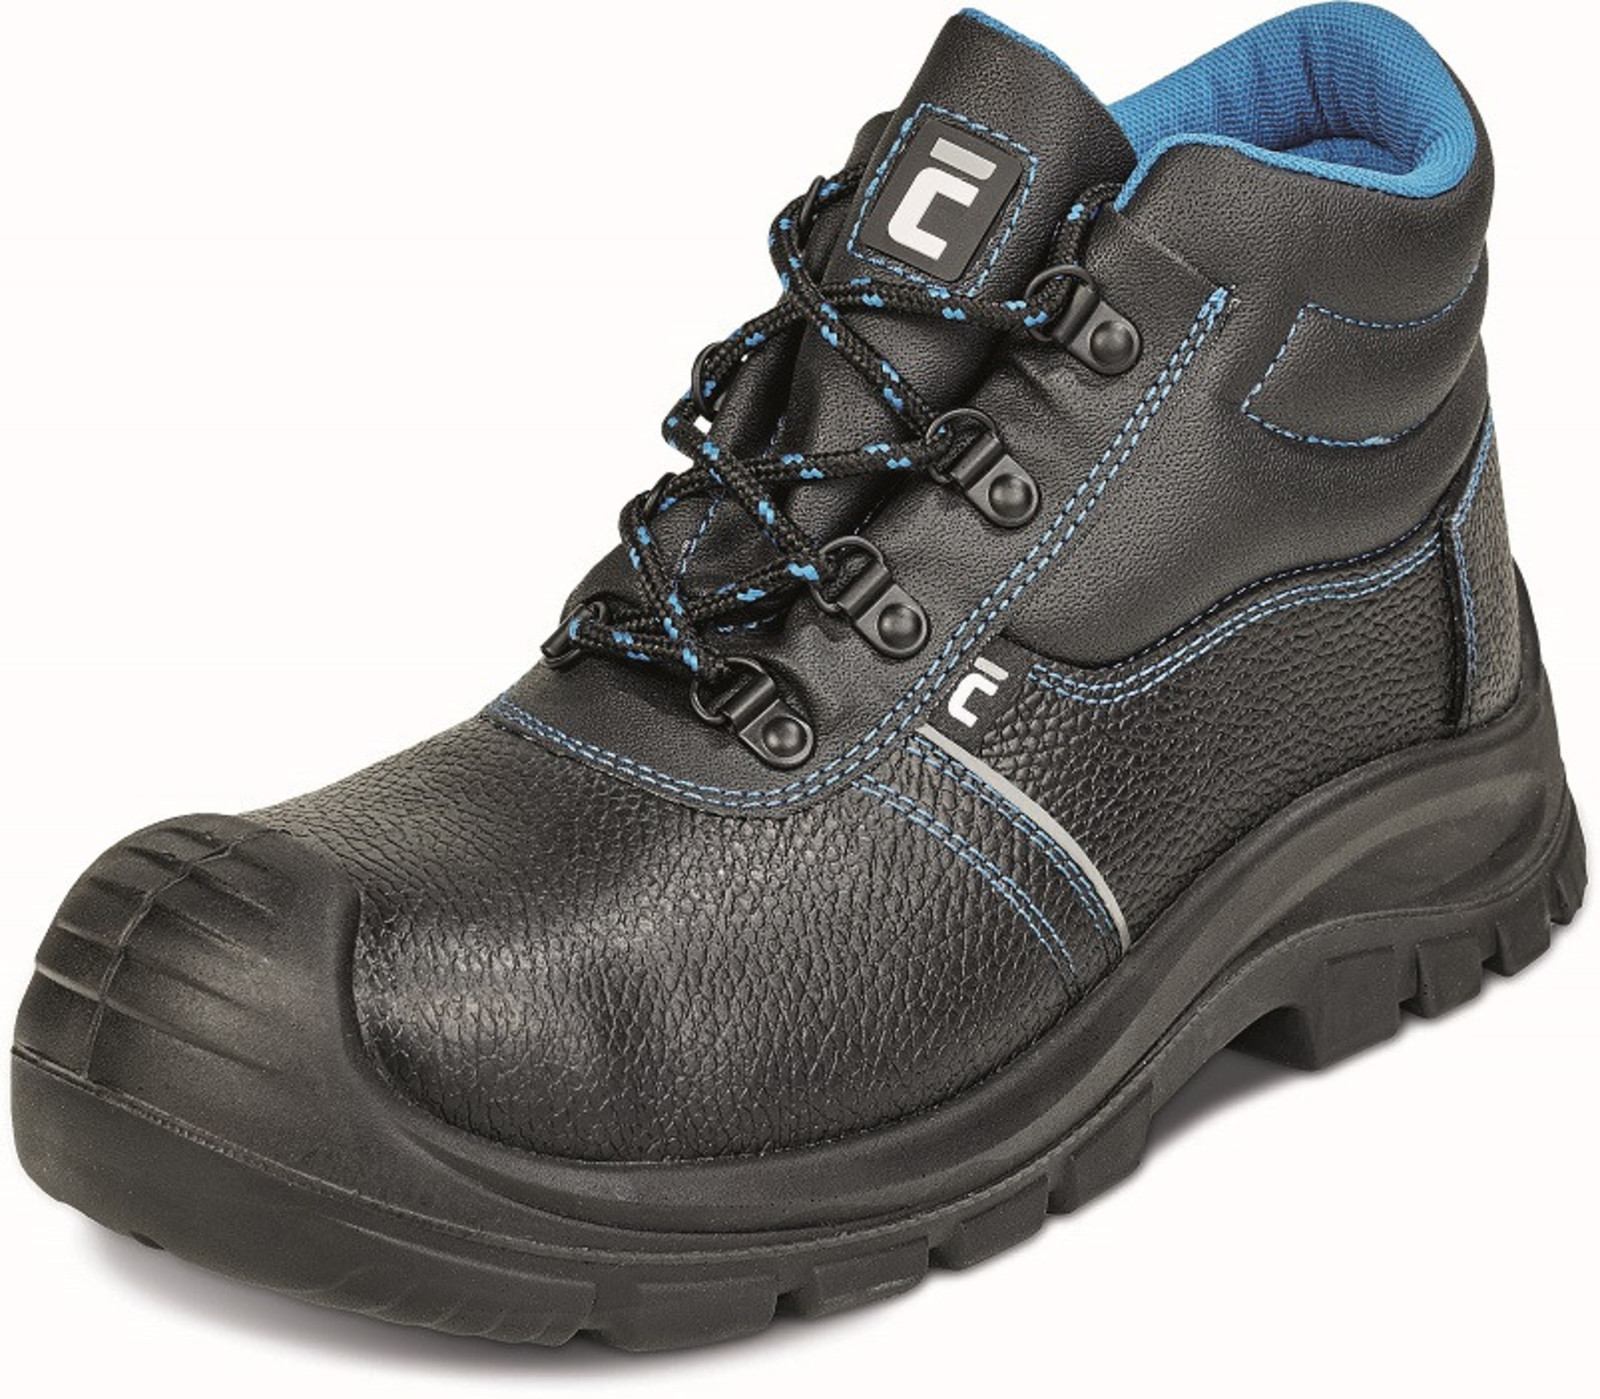 Bezpečnostná obuv Raven XT S3 - veľkosť: 45, farba: čierna